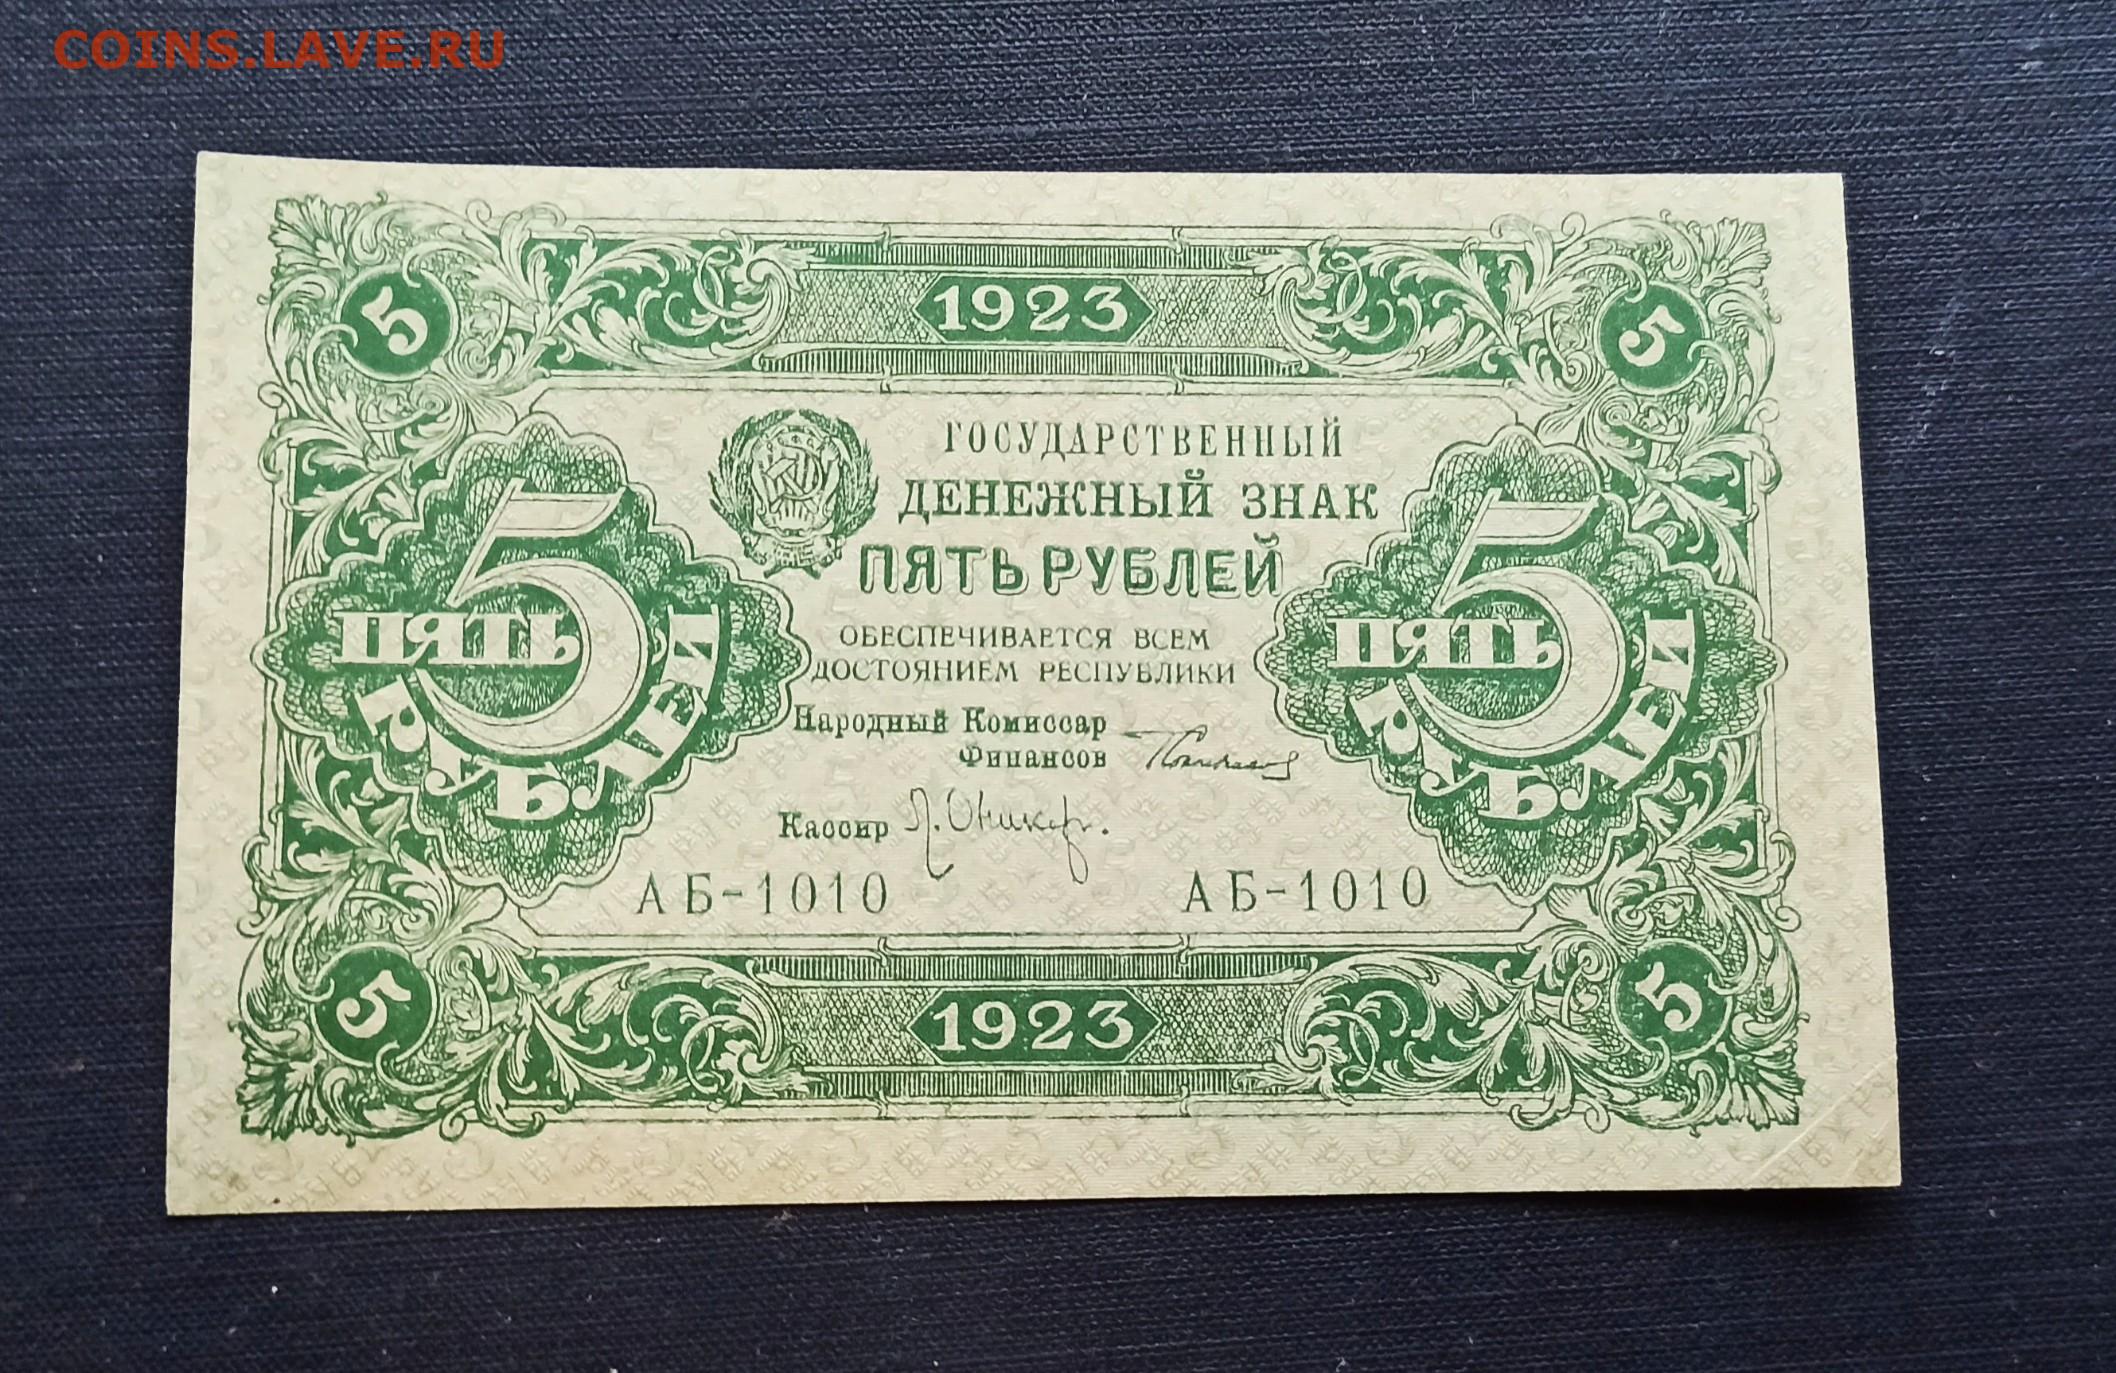 5 рублей мешок. 5 Рублей 1923 года. Деньги 1830 года бумажные. Рубль 1923 года. Купюры 1830 год.